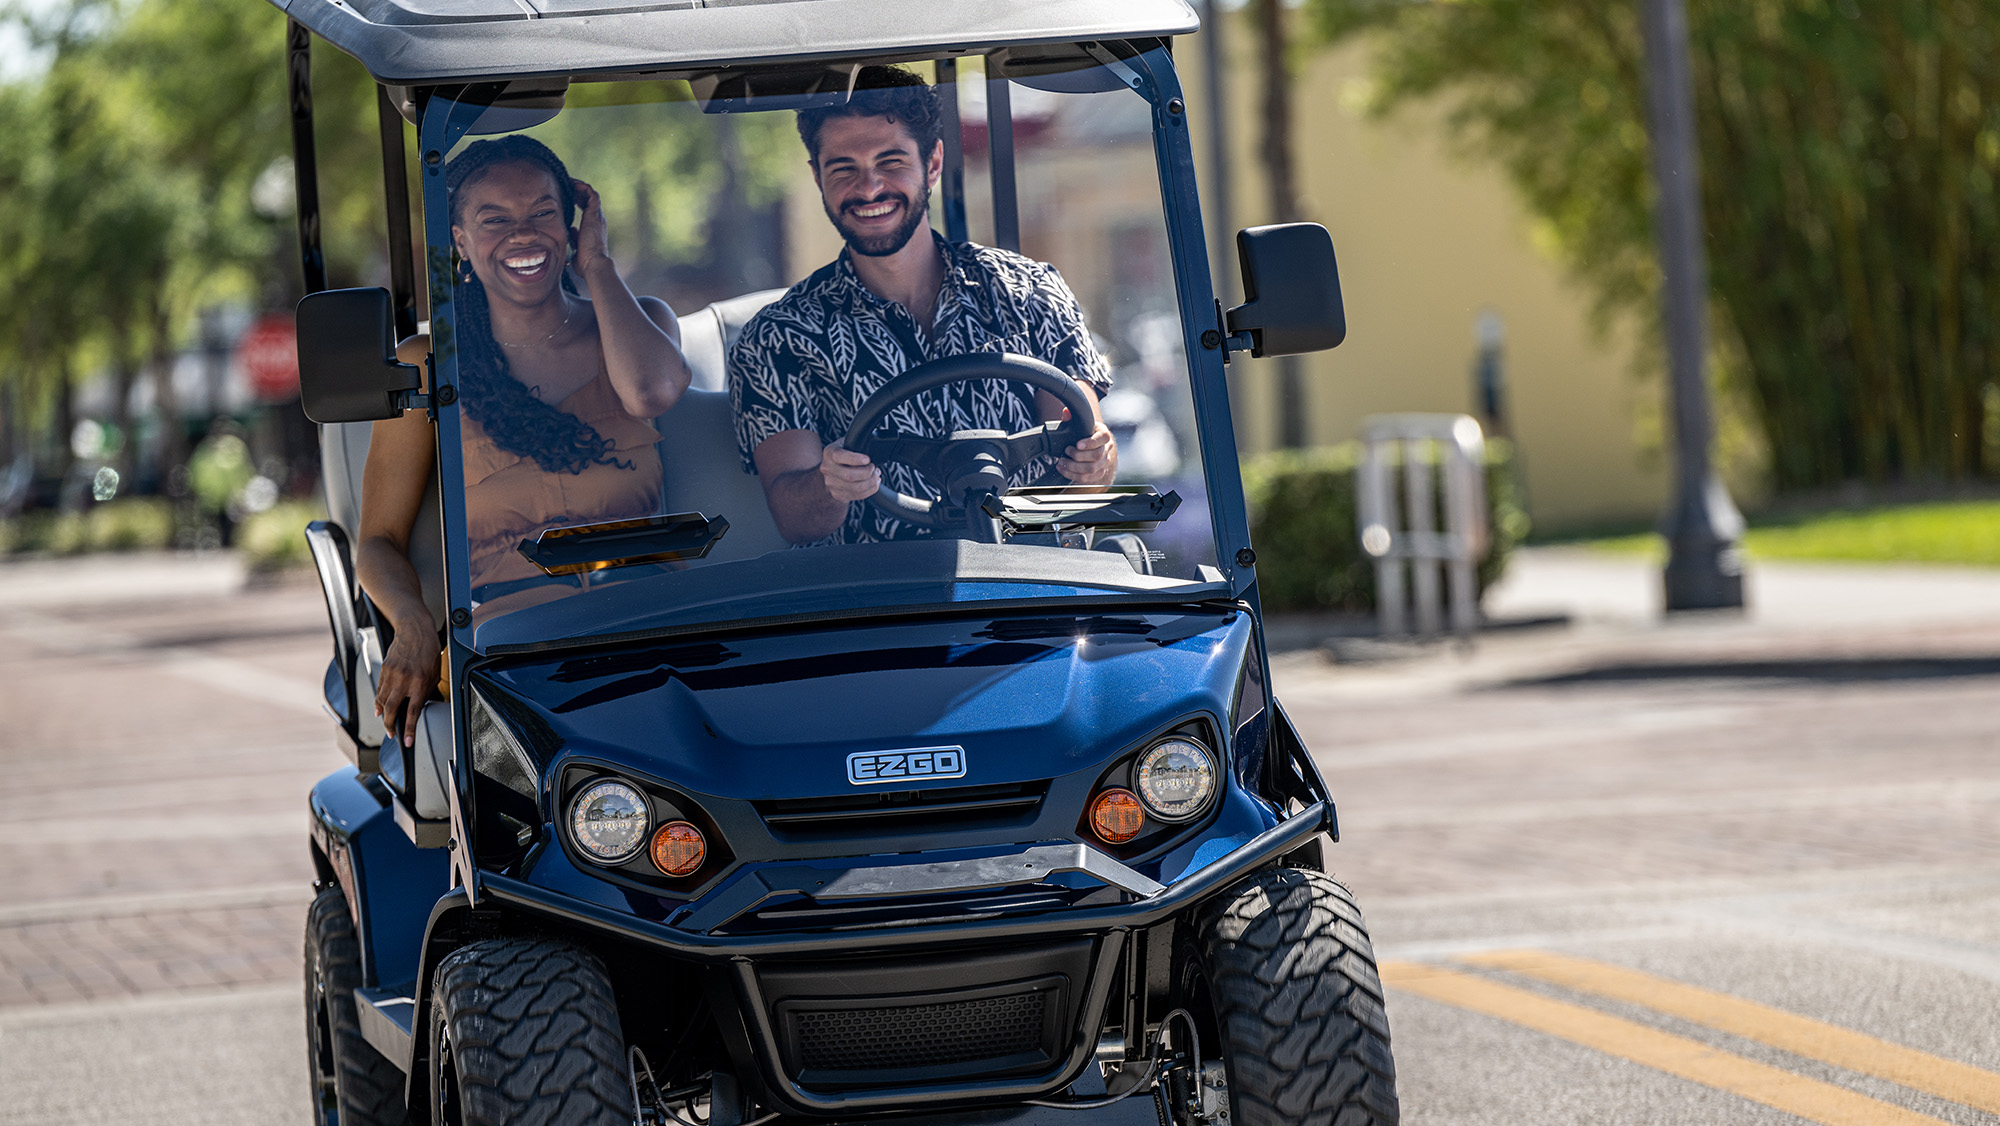 A couple driving an E-Z-GO golf cart.